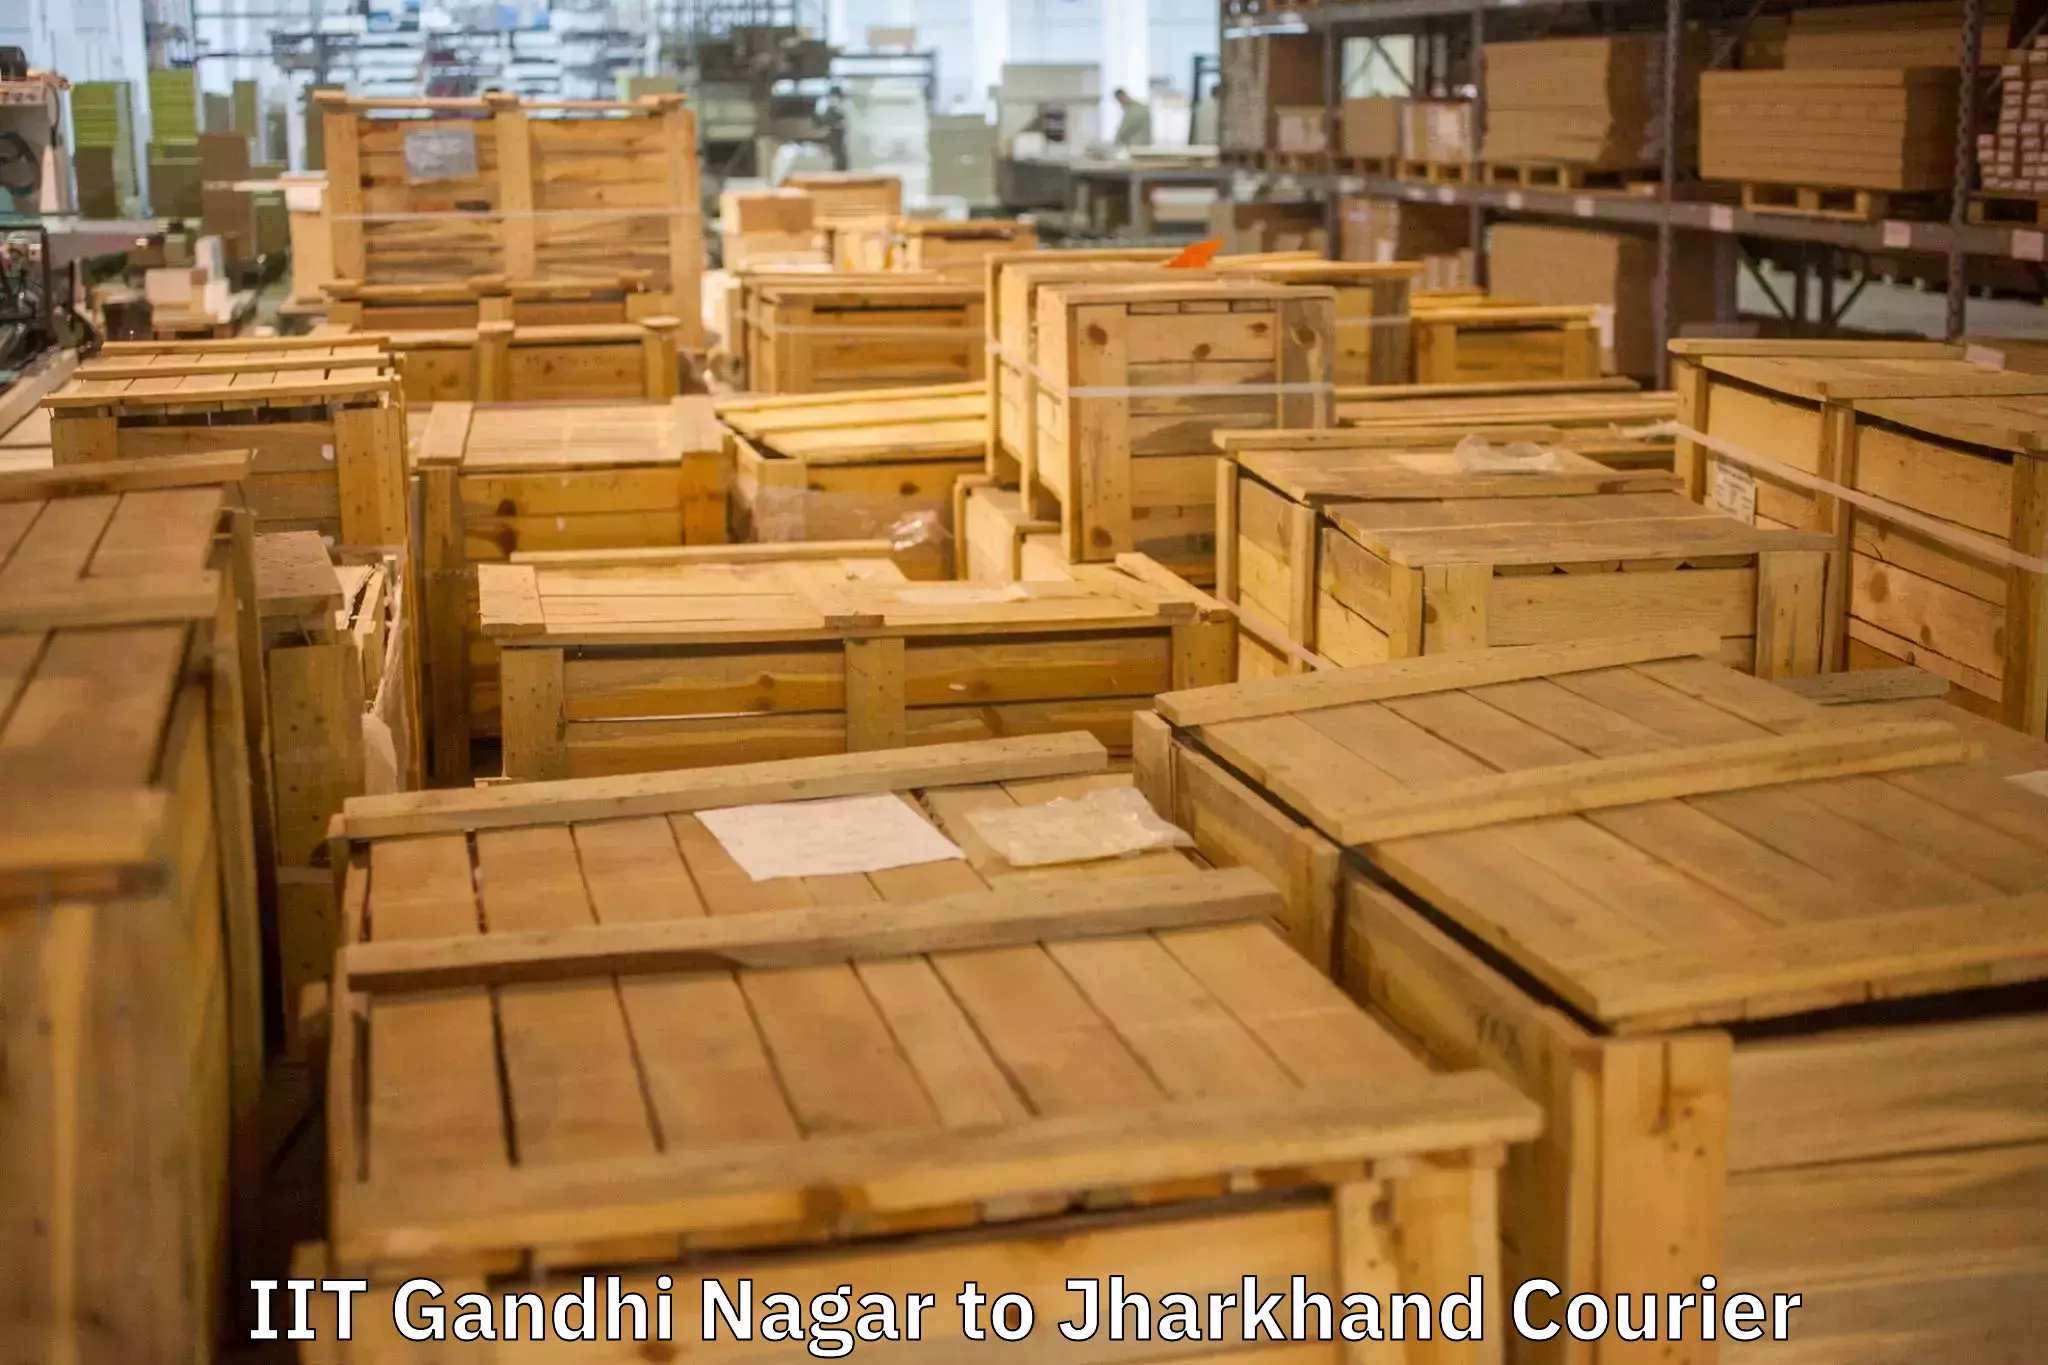 Professional packing services IIT Gandhi Nagar to Chirkunda